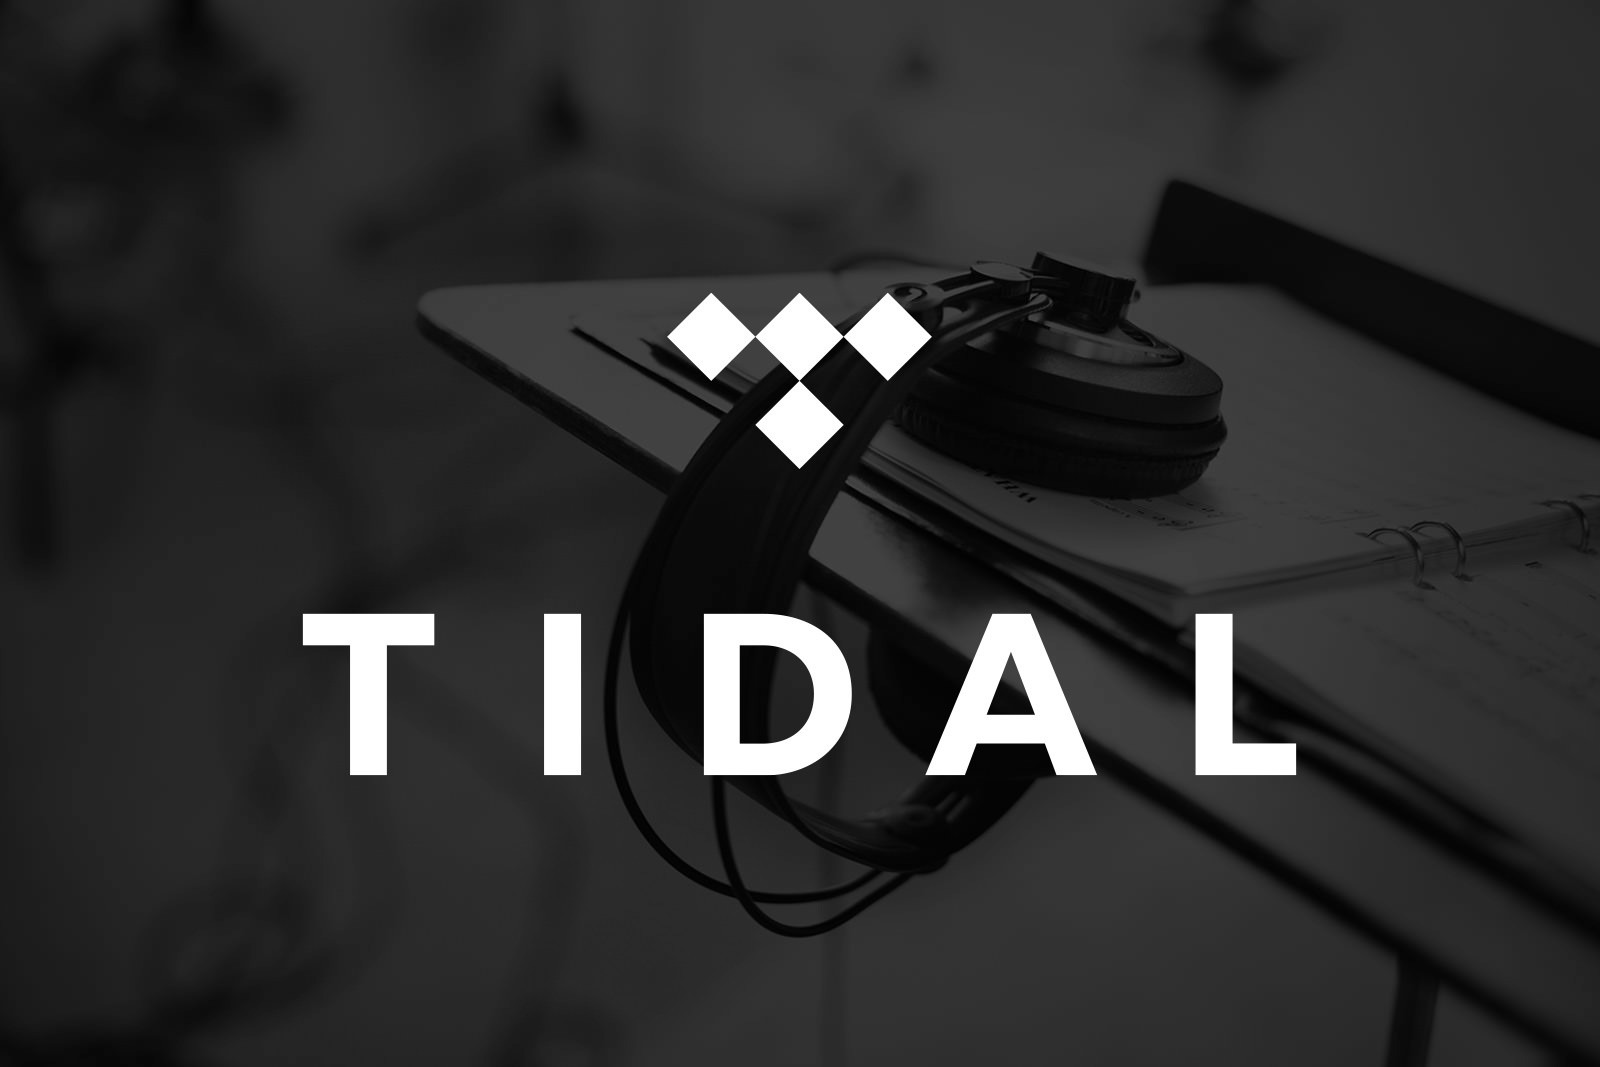 Square devient actionnaire majoritaire de Tidal, le service de streaming musical de Jay Z